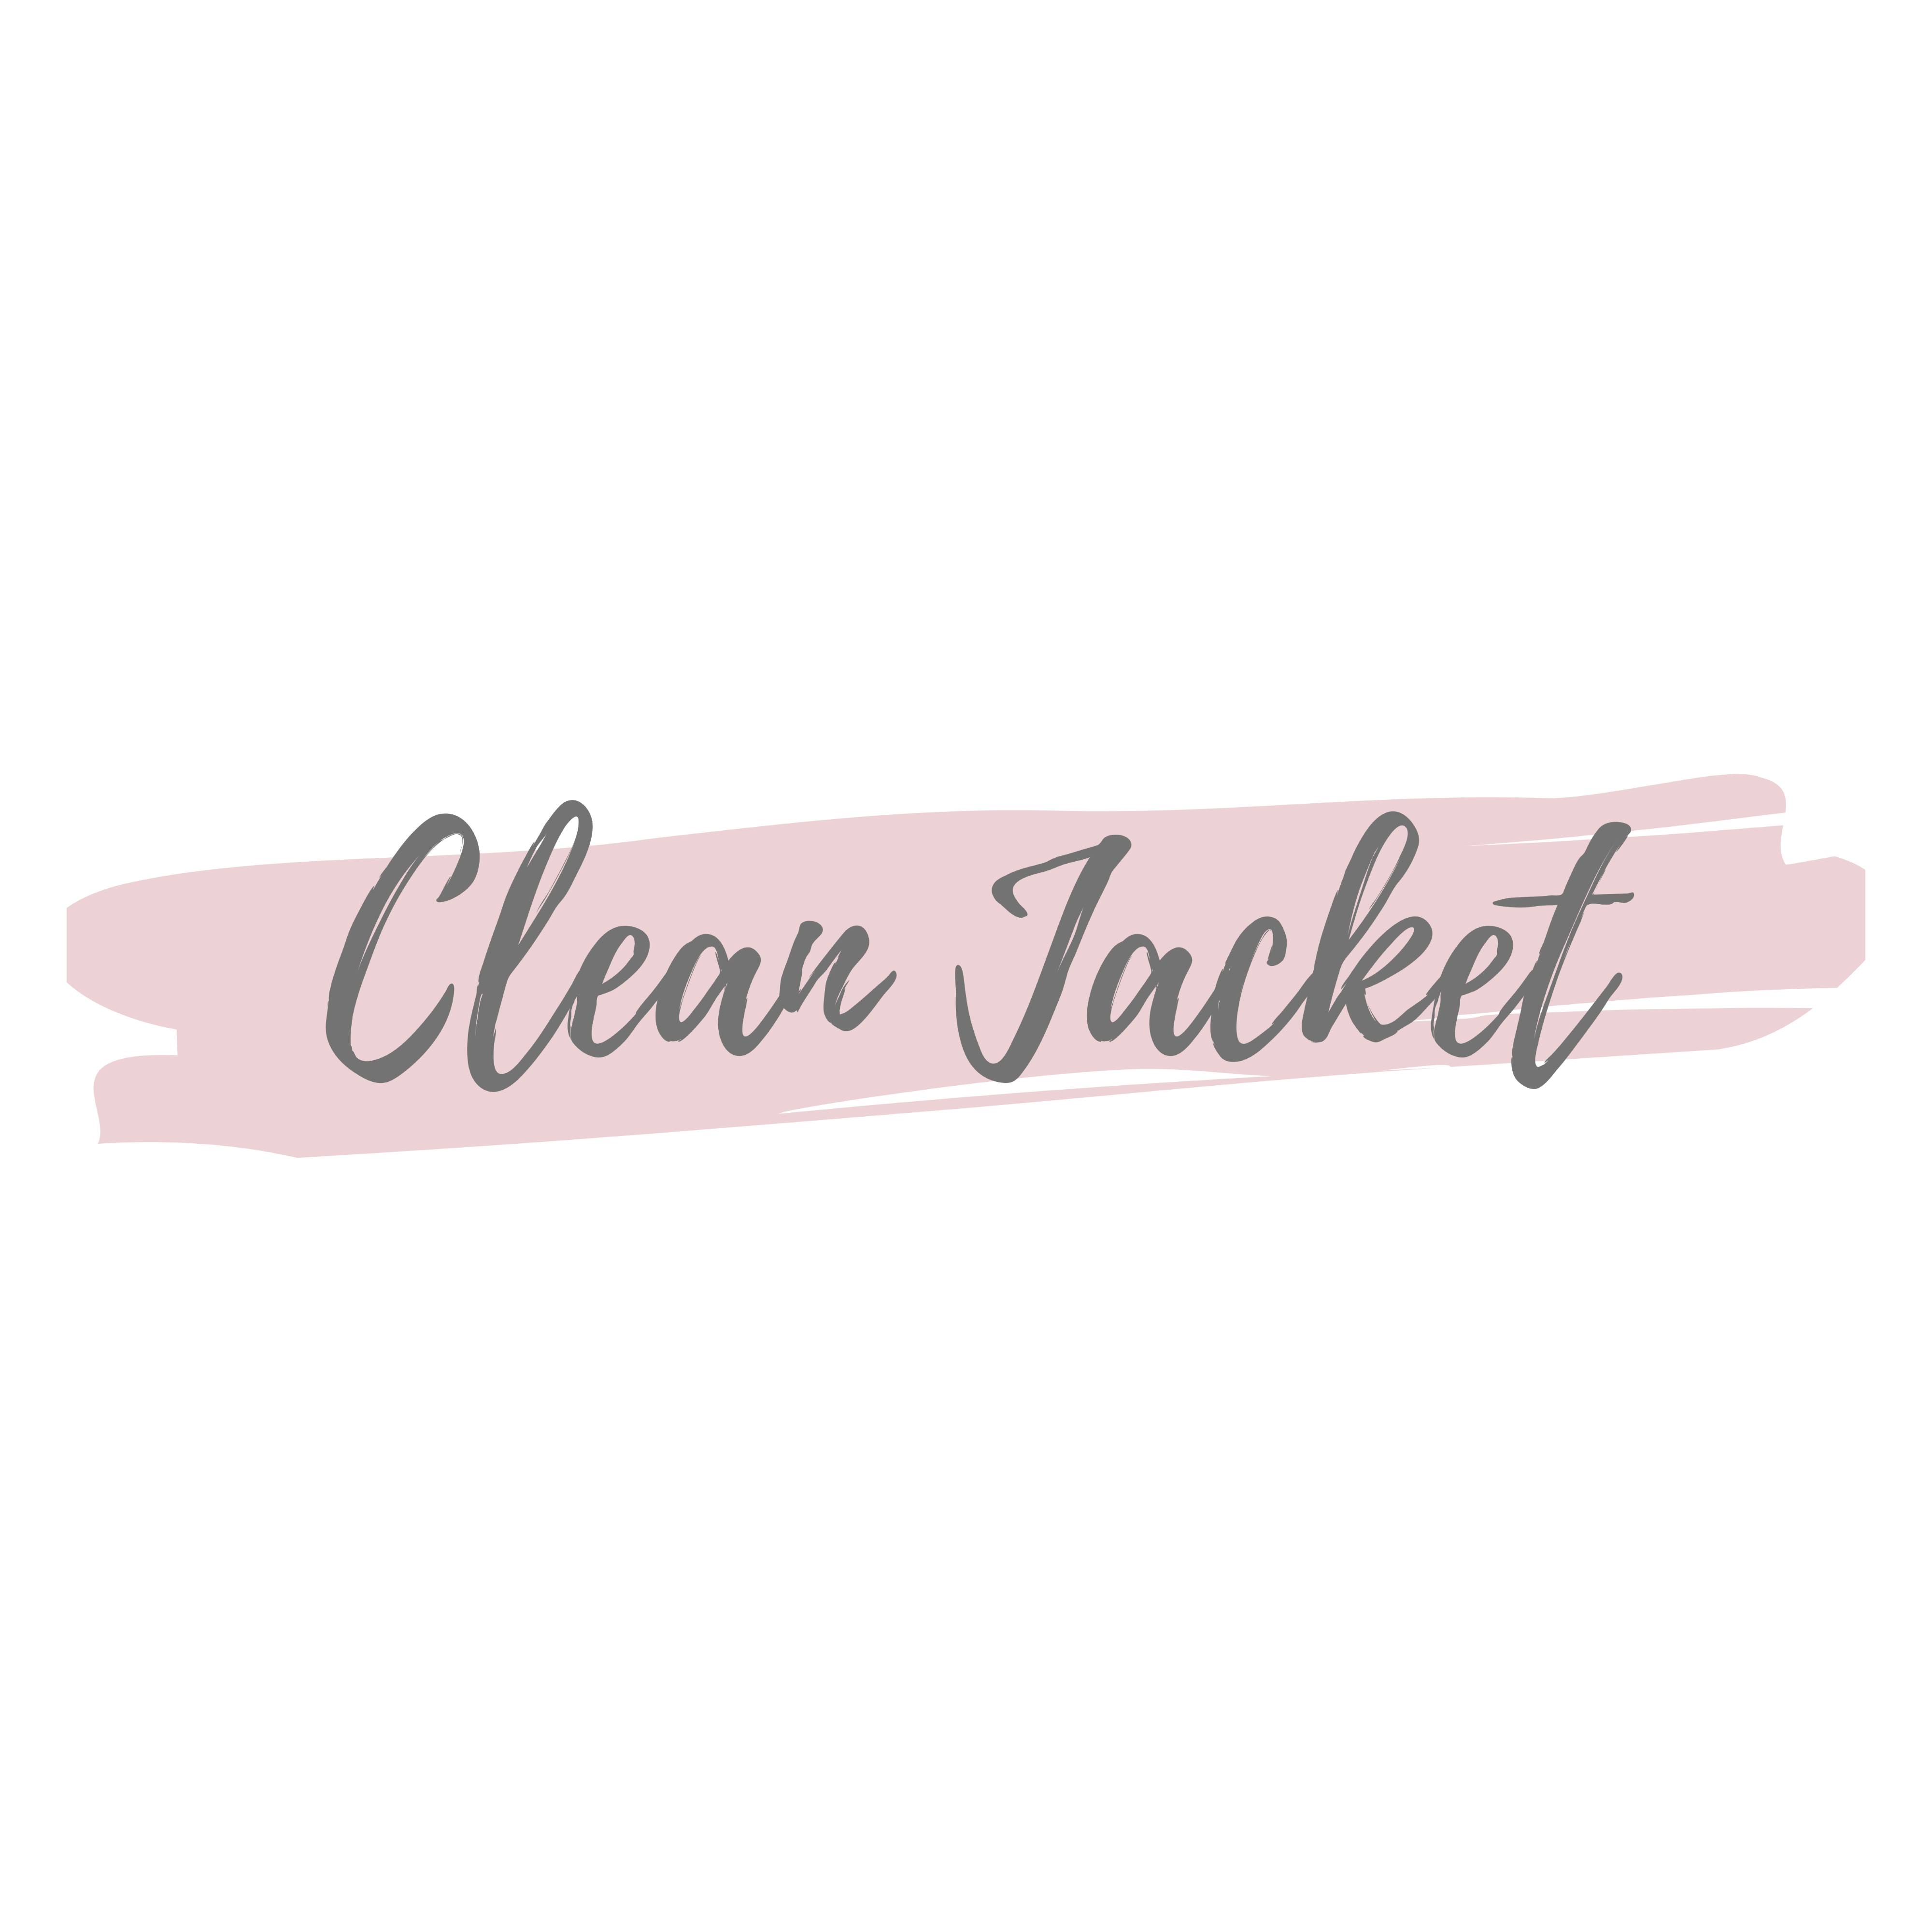 Clean Jacket/Bolero